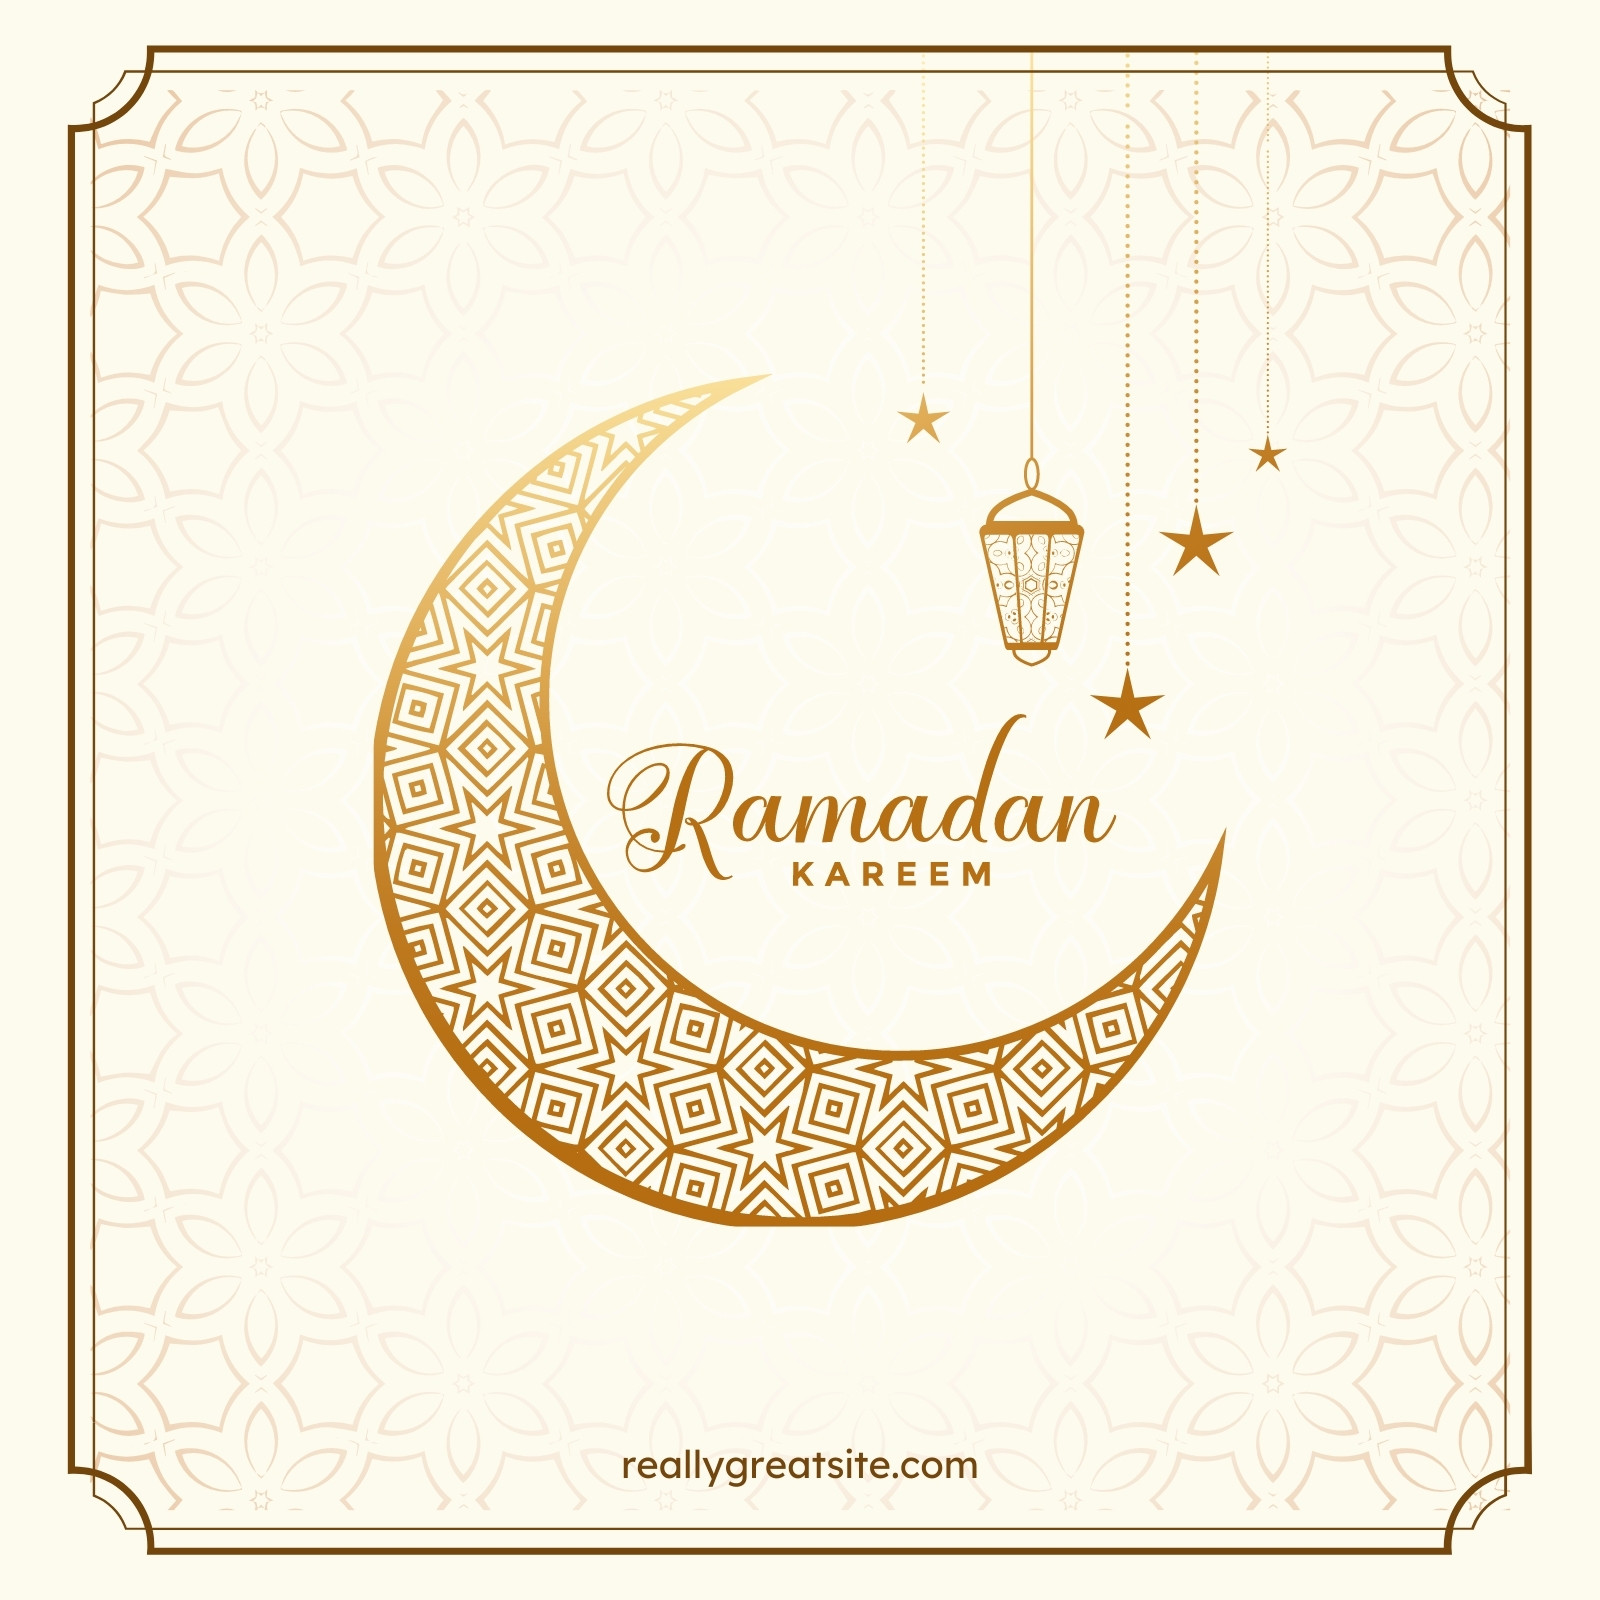 Tận hưởng không khí Ramadan với các mẫu Ramadan miễn phí và tùy chỉnh được. Chúng tôi cung cấp cho bạn những mẫu thiết kế độc đáo và đa dạng như thiệp, banner hay poster để bạn tùy chỉnh và sử dụng miễn phí. Bạn không cần phải chuyên về thiết kế, chỉ cần viết lời chúc hoặc tài liệu cần thiết rồi lưu trữ hoặc in để sử dụng.